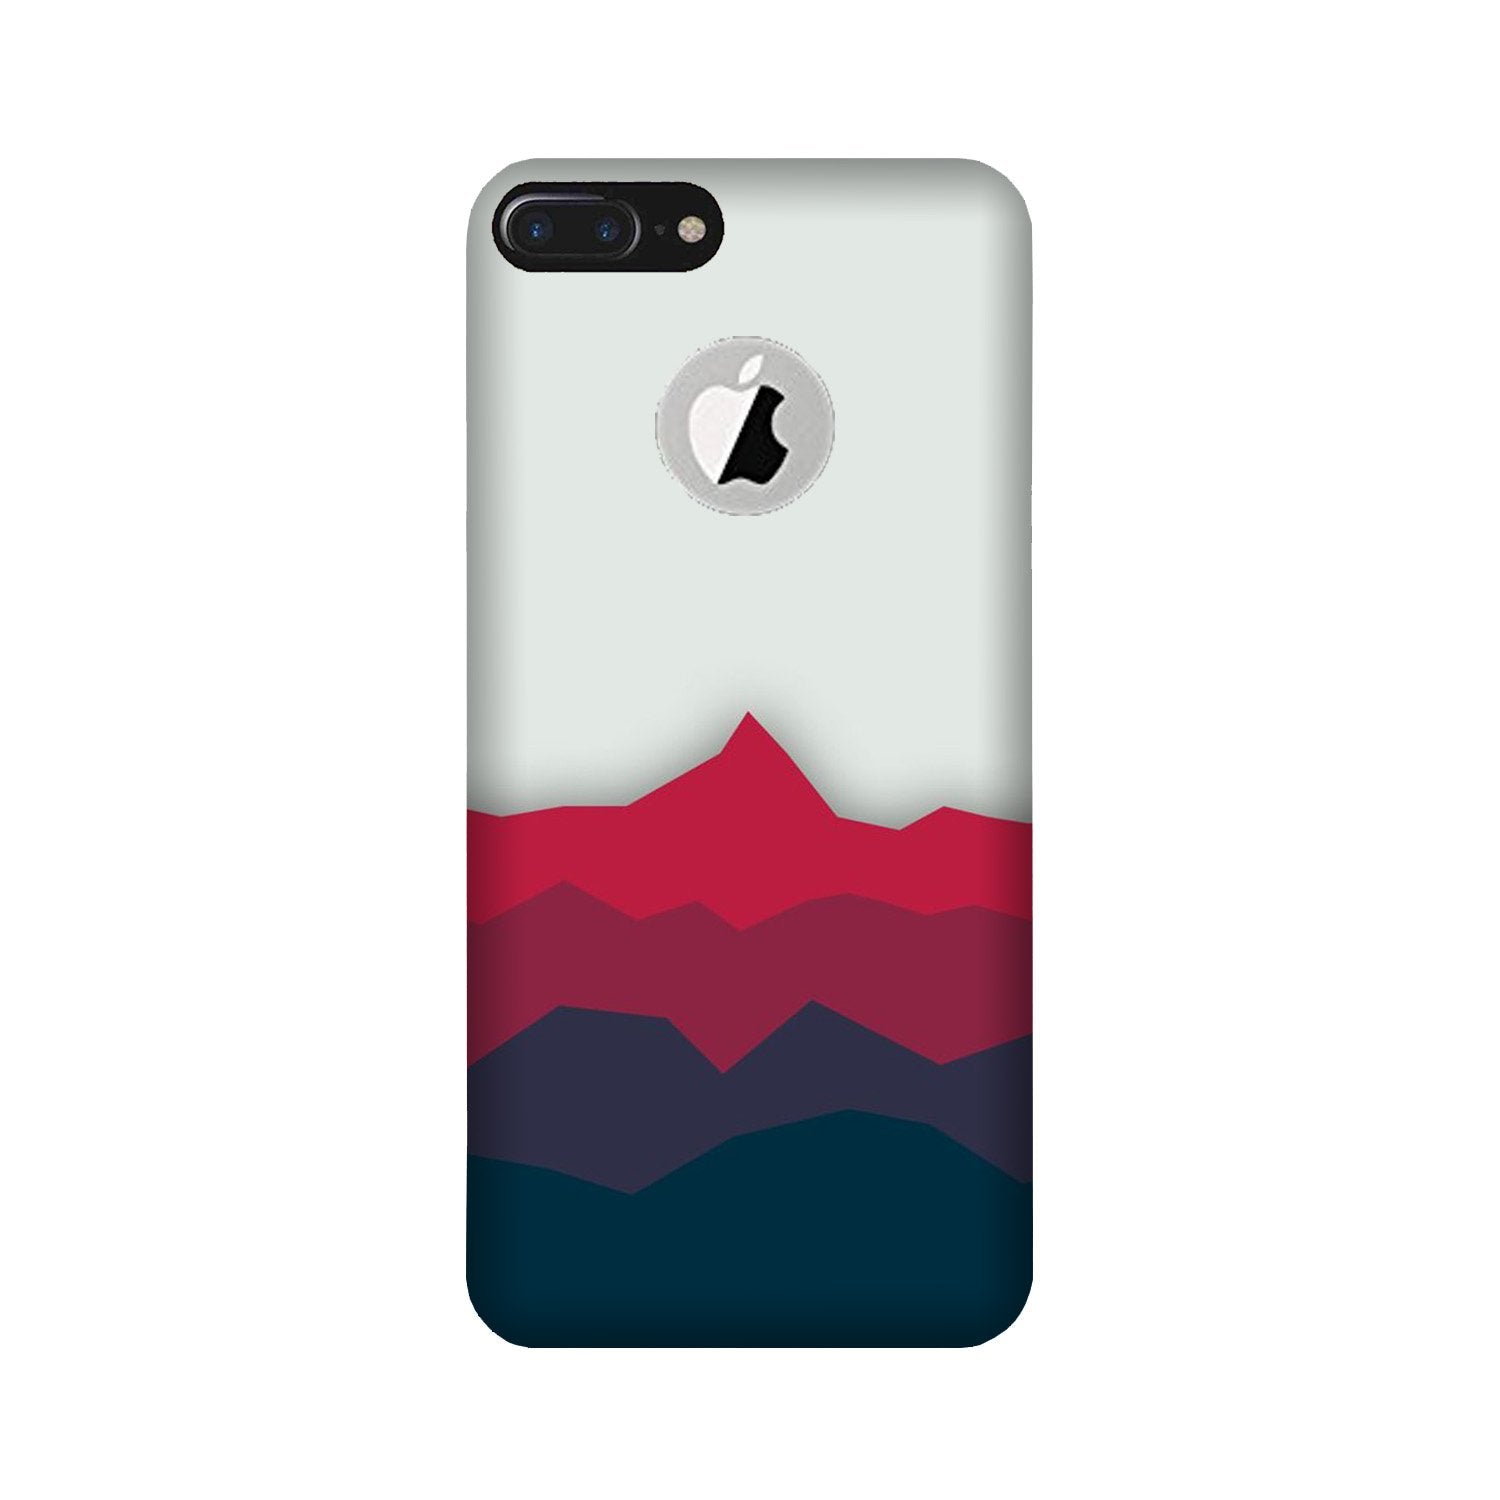 Designer Case for iPhone 7 Plus logo cut (Design - 195)